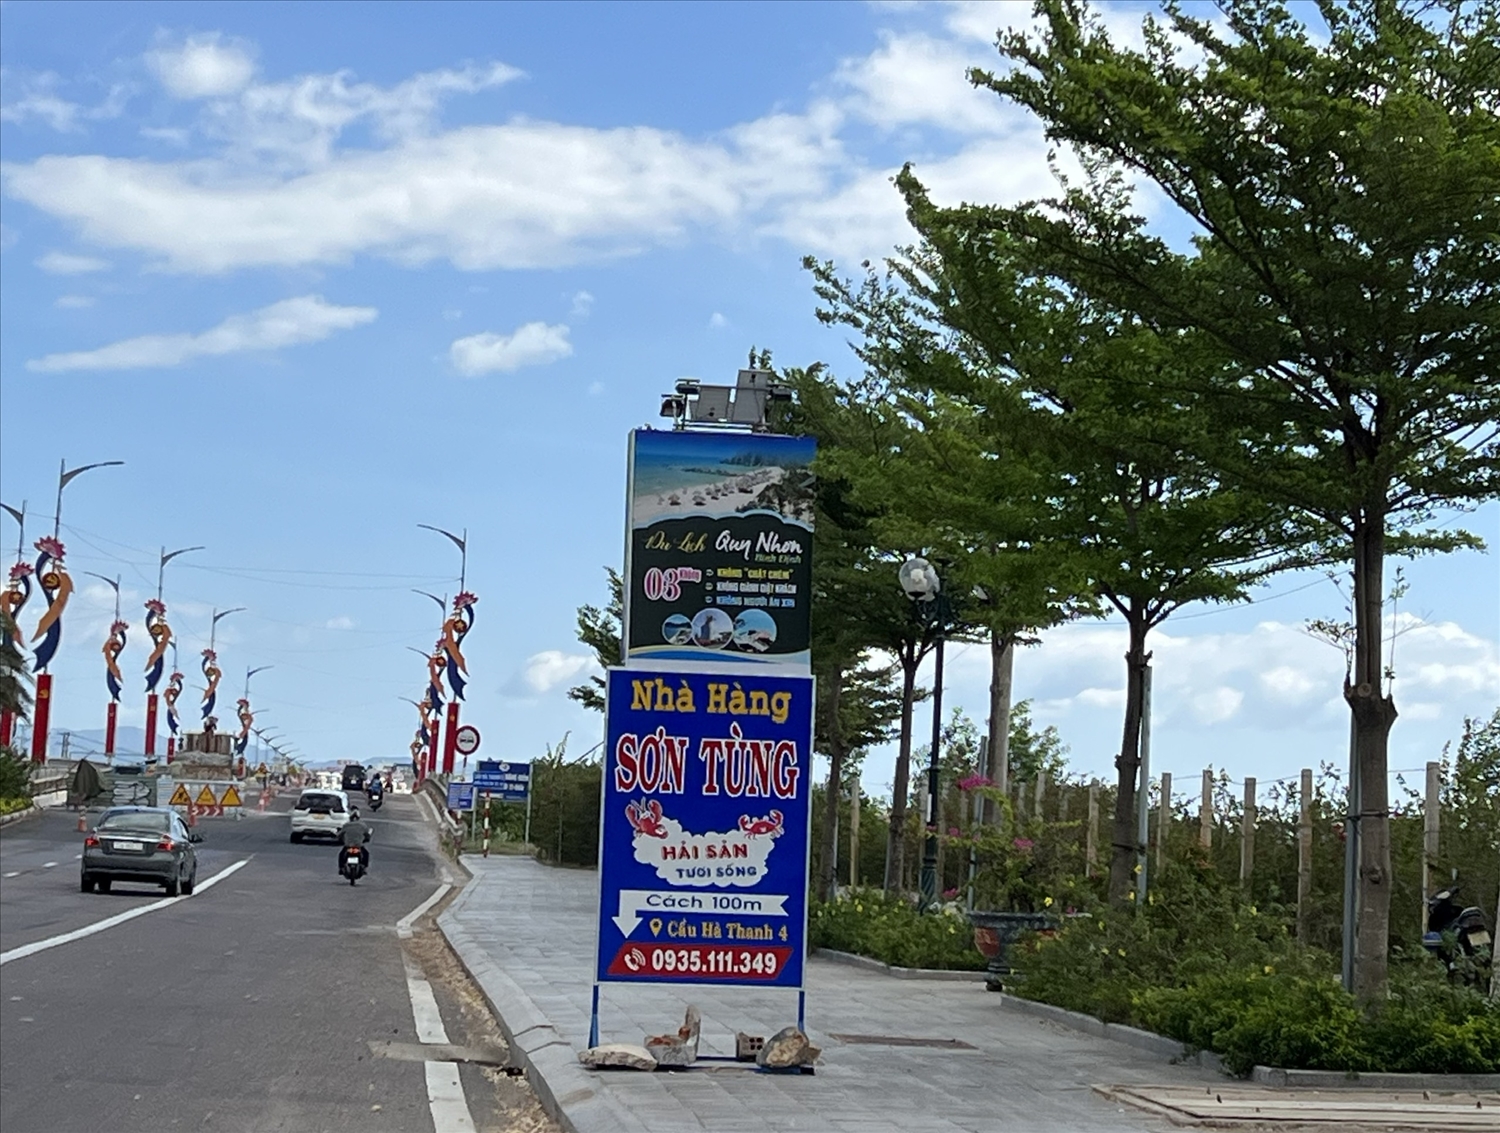 Báo cáo với chính quyền là đang neo đậu tạm để sửa chữa nhưng chủ nhà hàng Sơn Tùng lại mang bảng quảng cáo nhà hàng ra đặt ở đầu cầu Hà Thanh 5 để đón khách